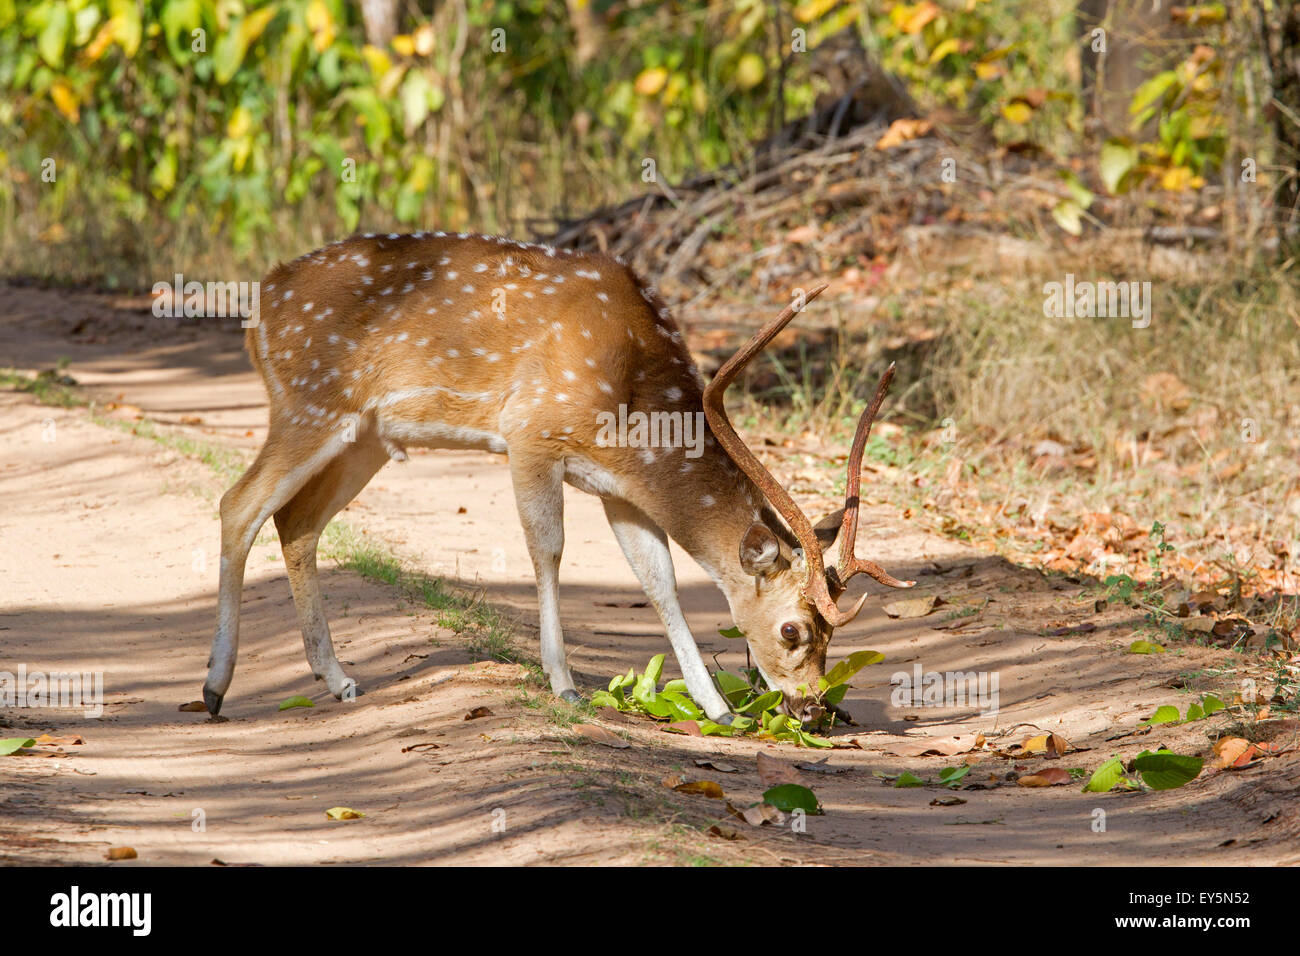 Ciervo Axis comiendo en una pista - Bandhavgarh NP India Foto de stock